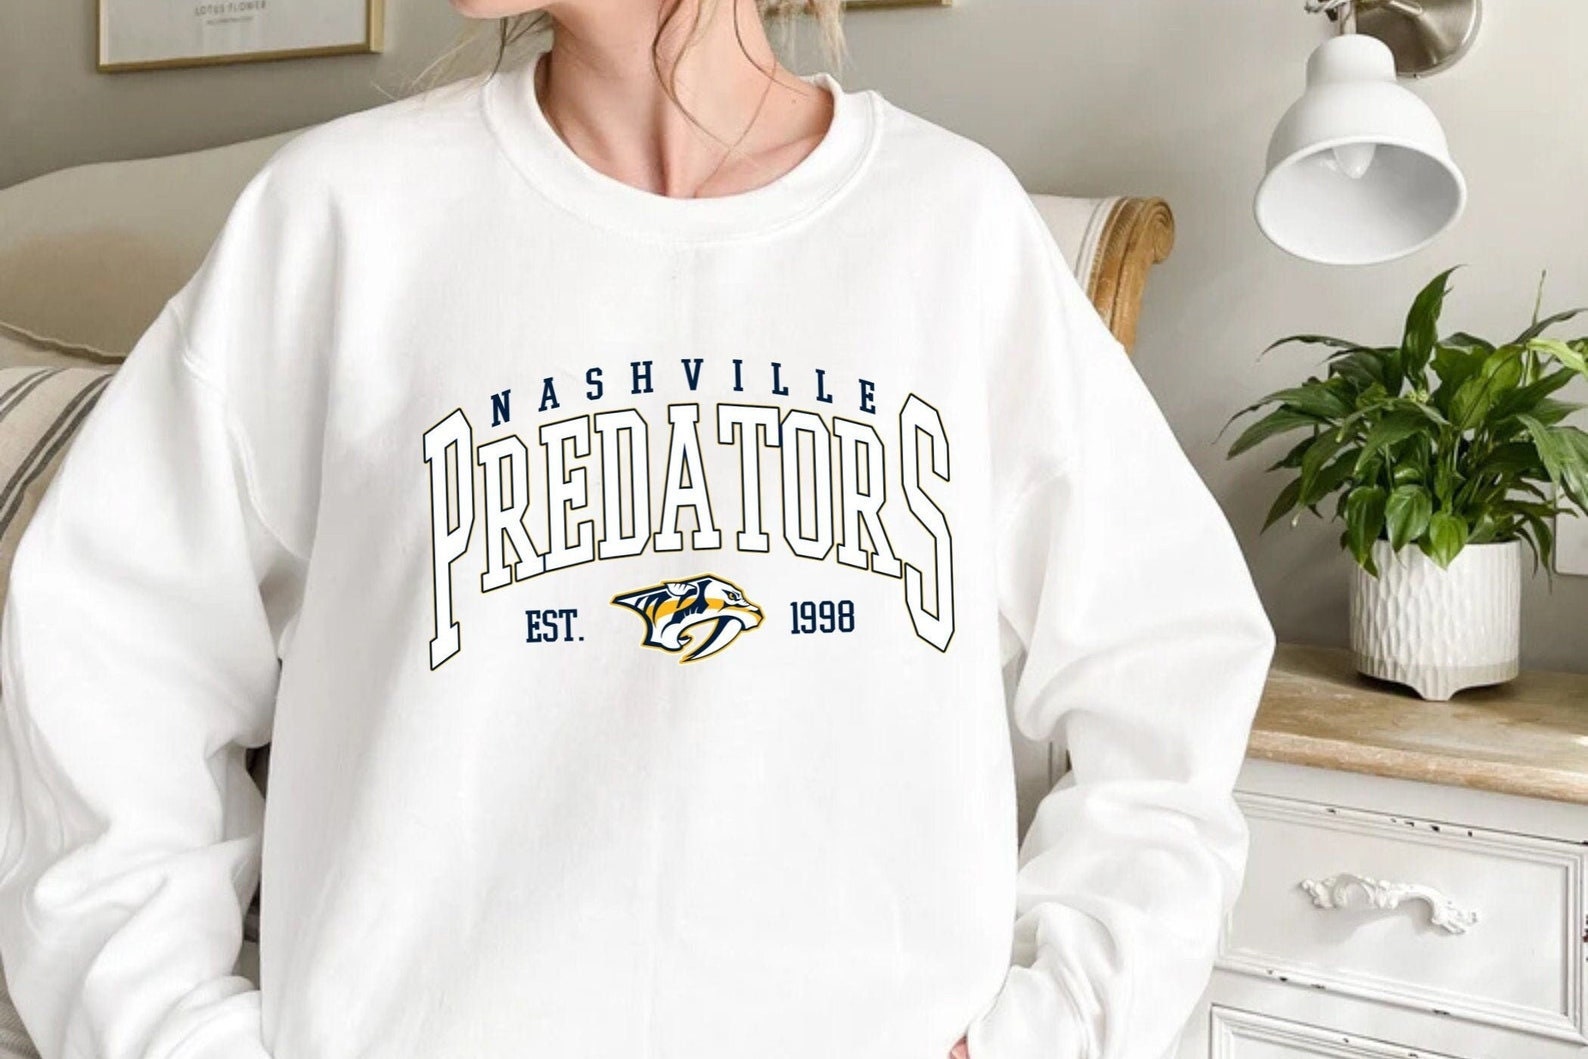 NHL Nashville Predators Girls' Crew Neck T-Shirt - L